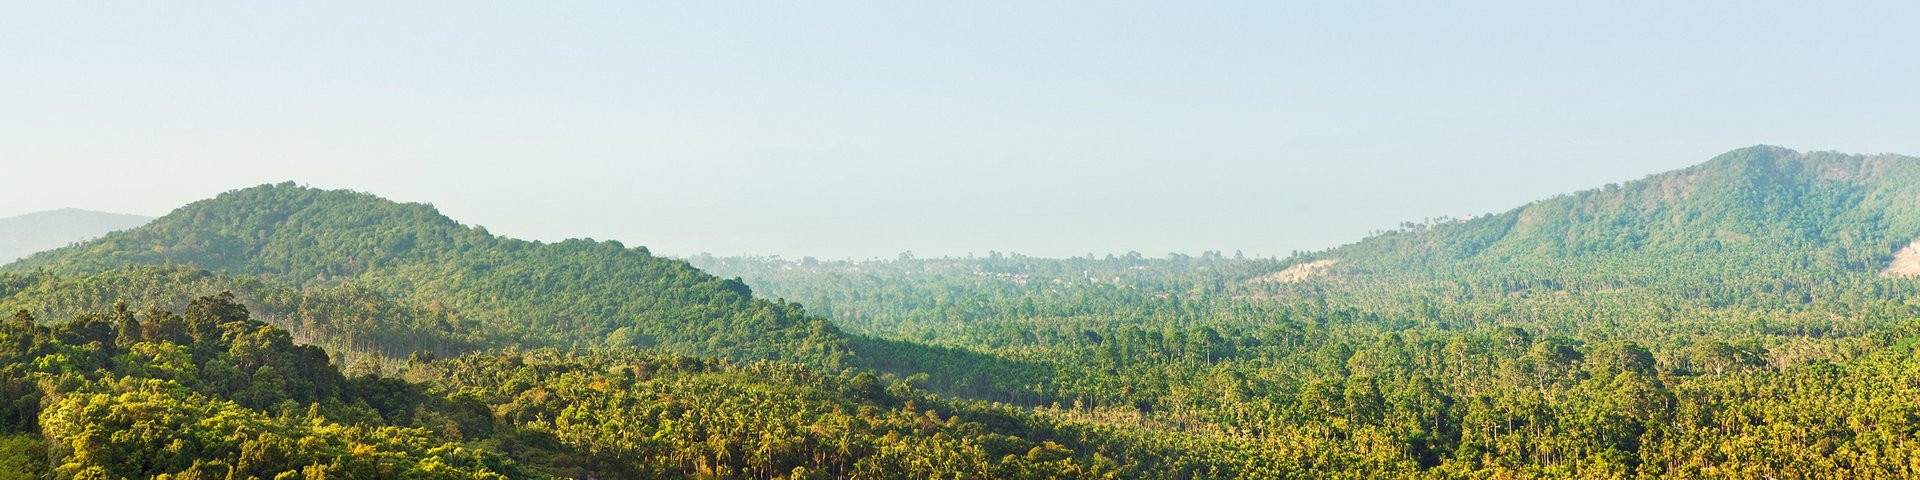 Leicht hügelige Dschungellandschaft in Thailand